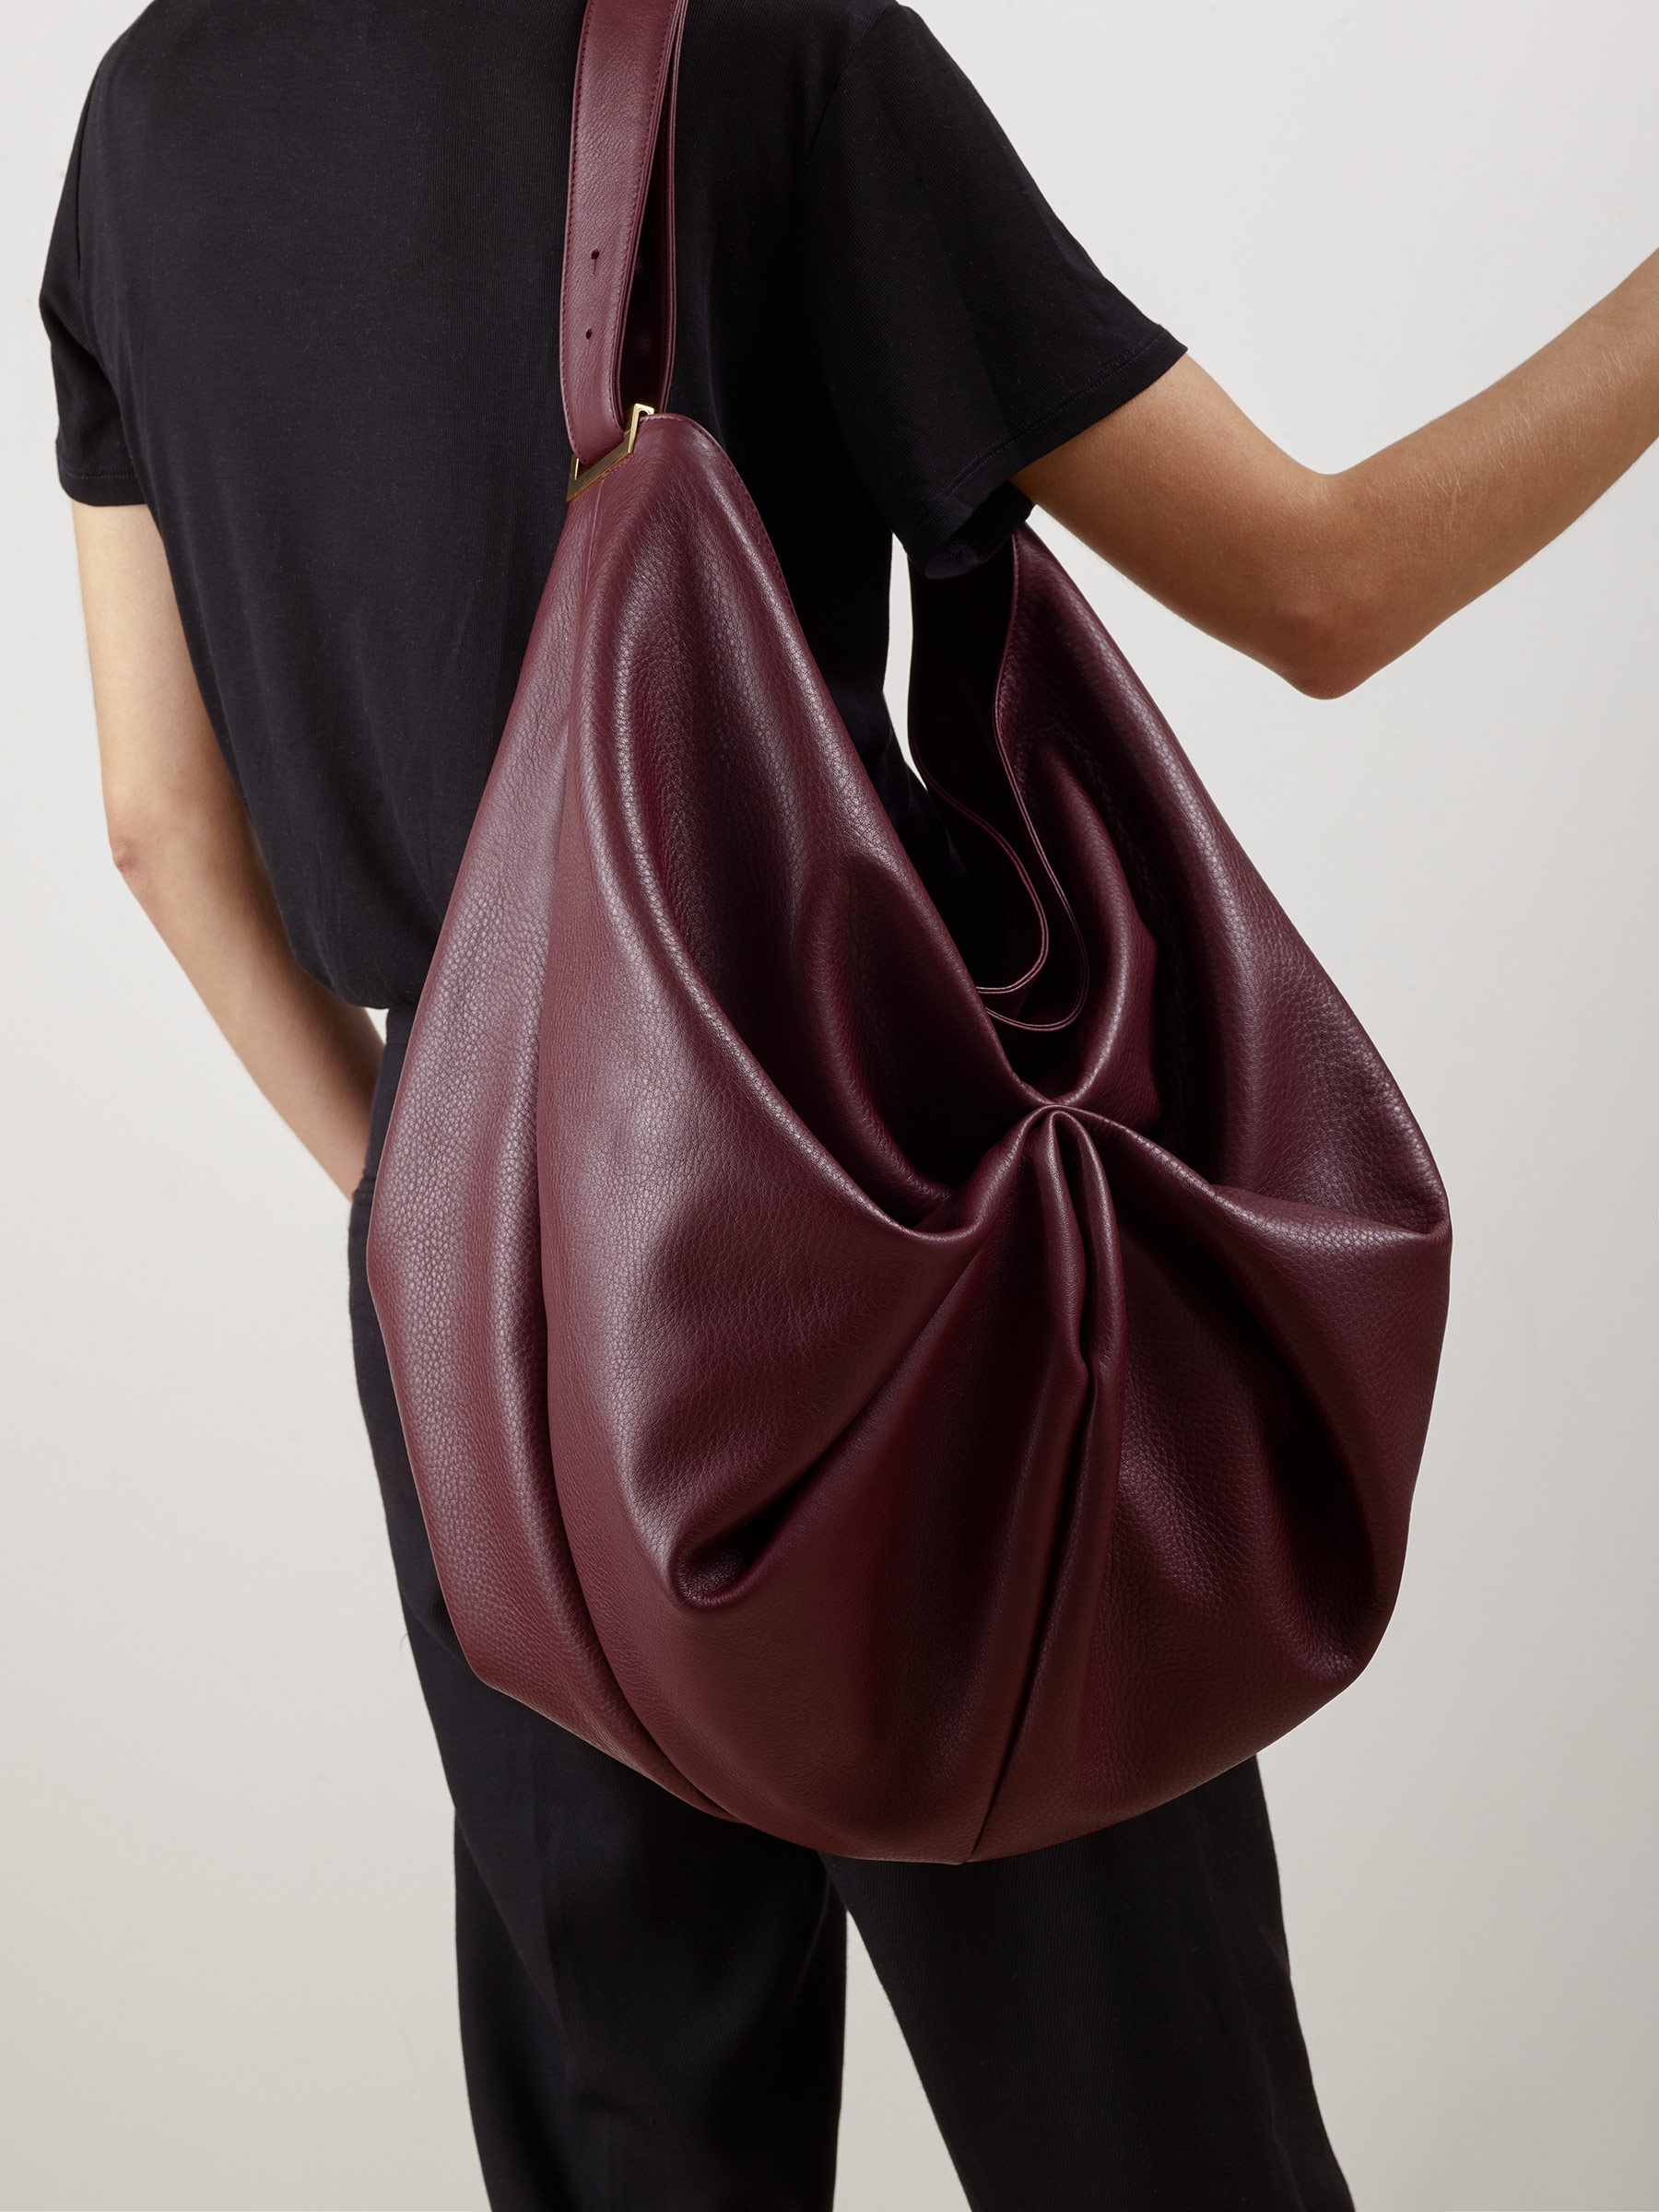 SACAR shoulder bag in burgundy calfskin leather | TSATSAS